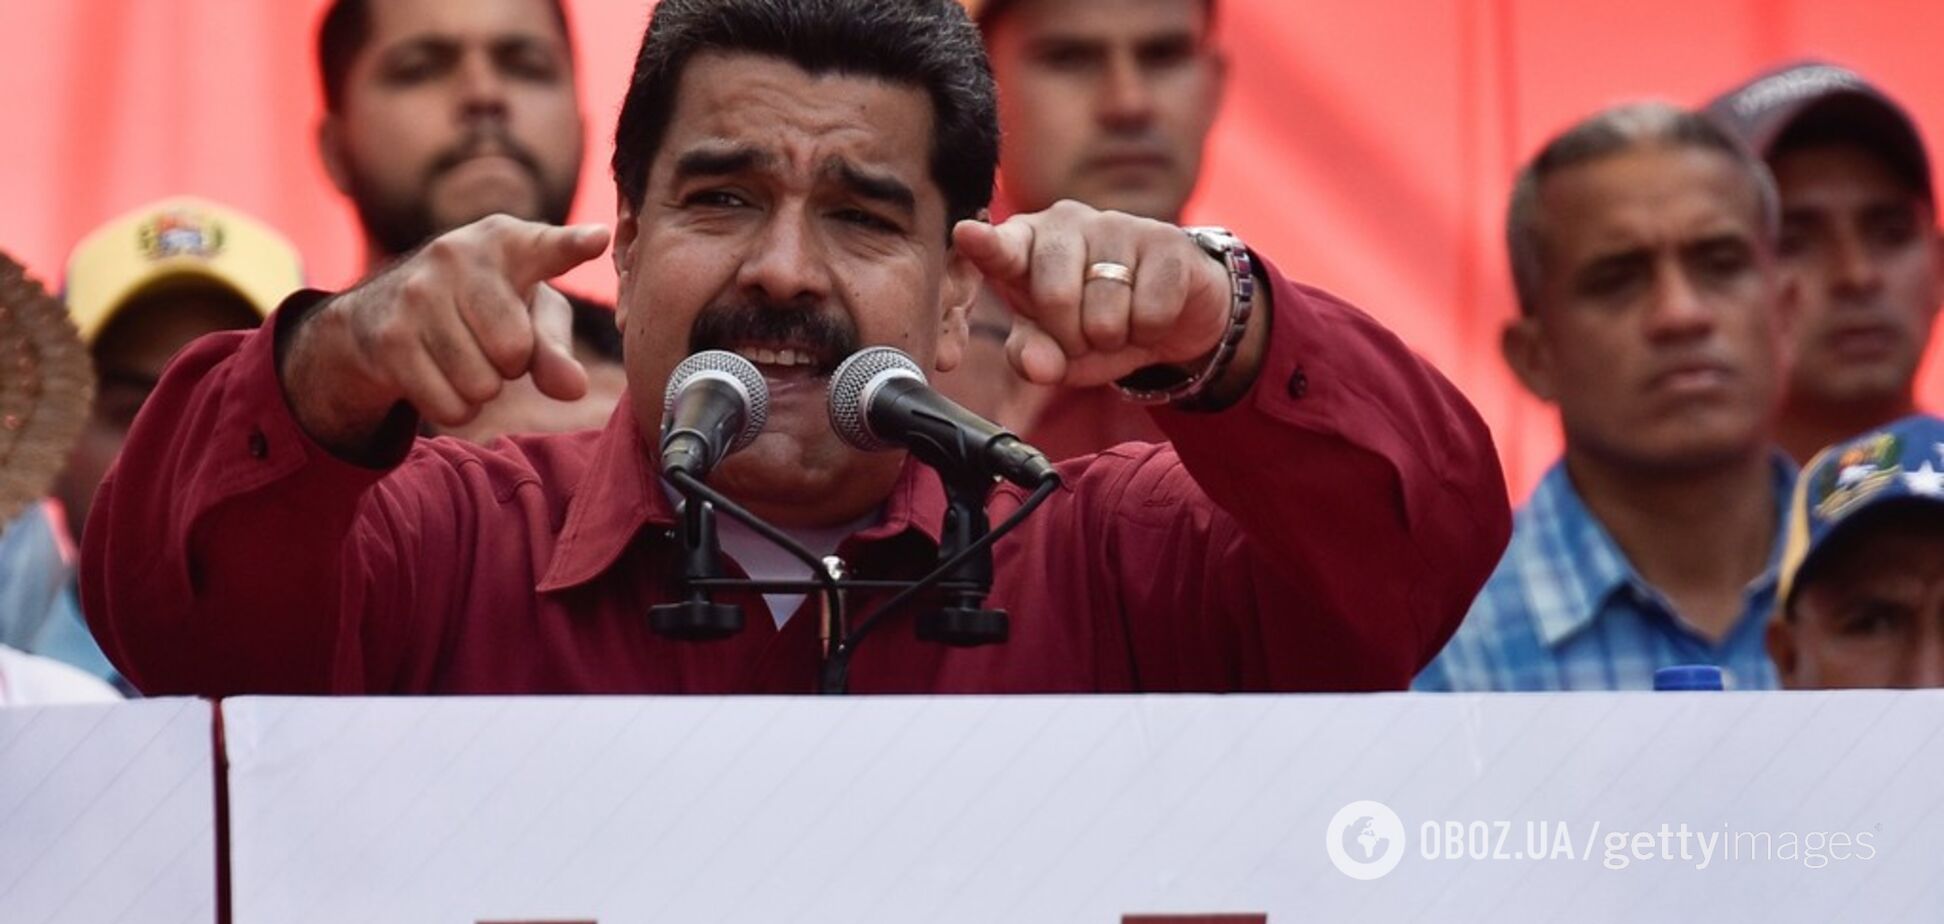  ''Приказал убить'': Мадуро выступил с громким обвинением против Трампа